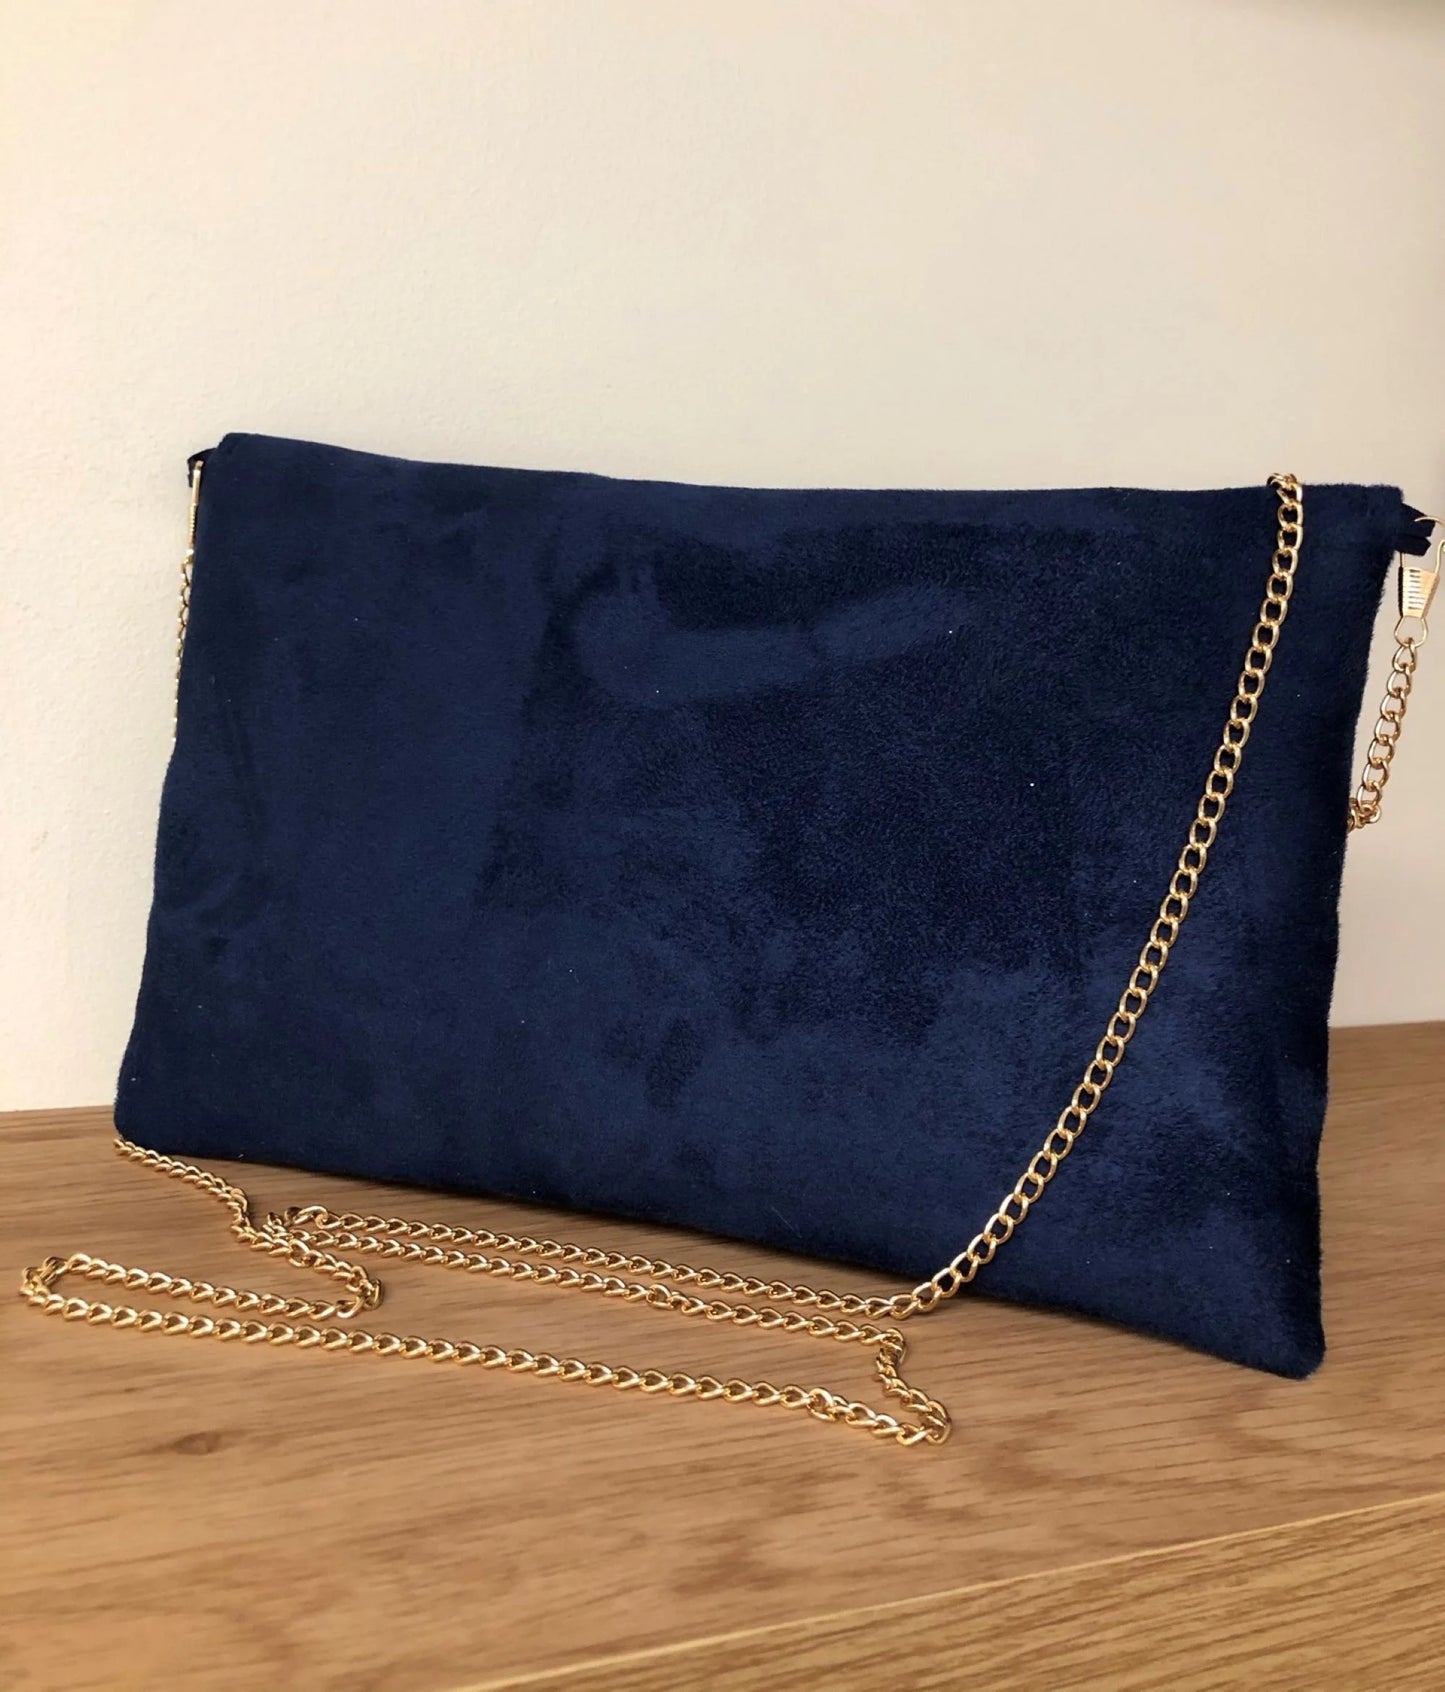 Le dos du sac pochette Isa bleu marine et doré à paillettes, avec chainette amovible.